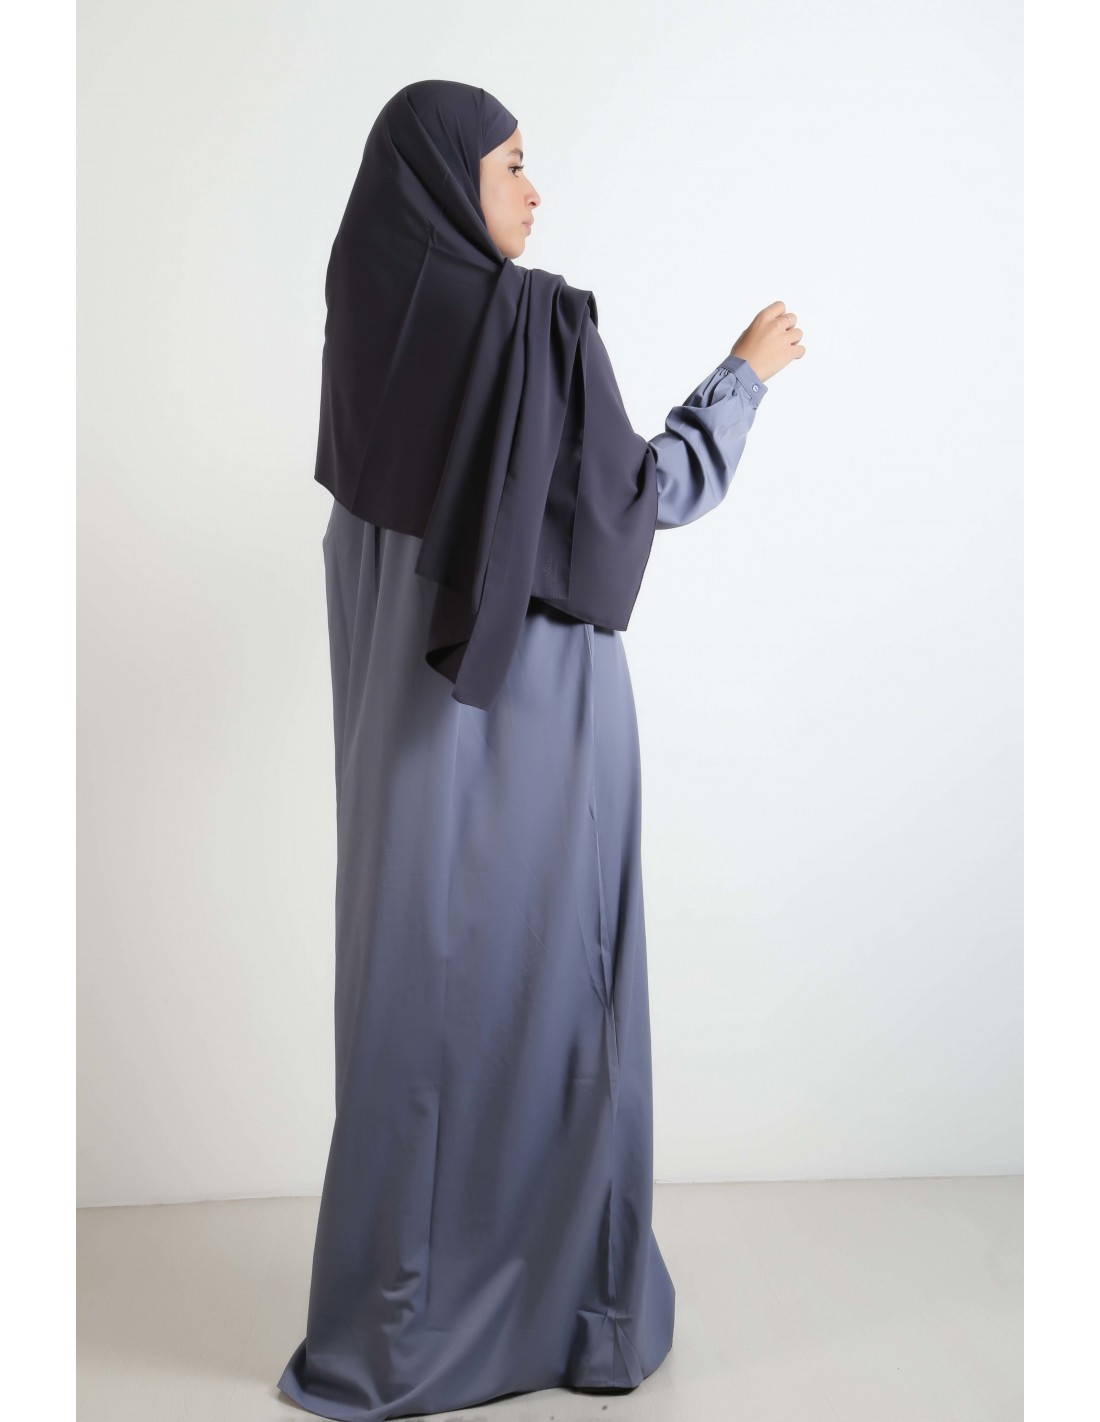 Robe abaya  Sanaa bleu jean 